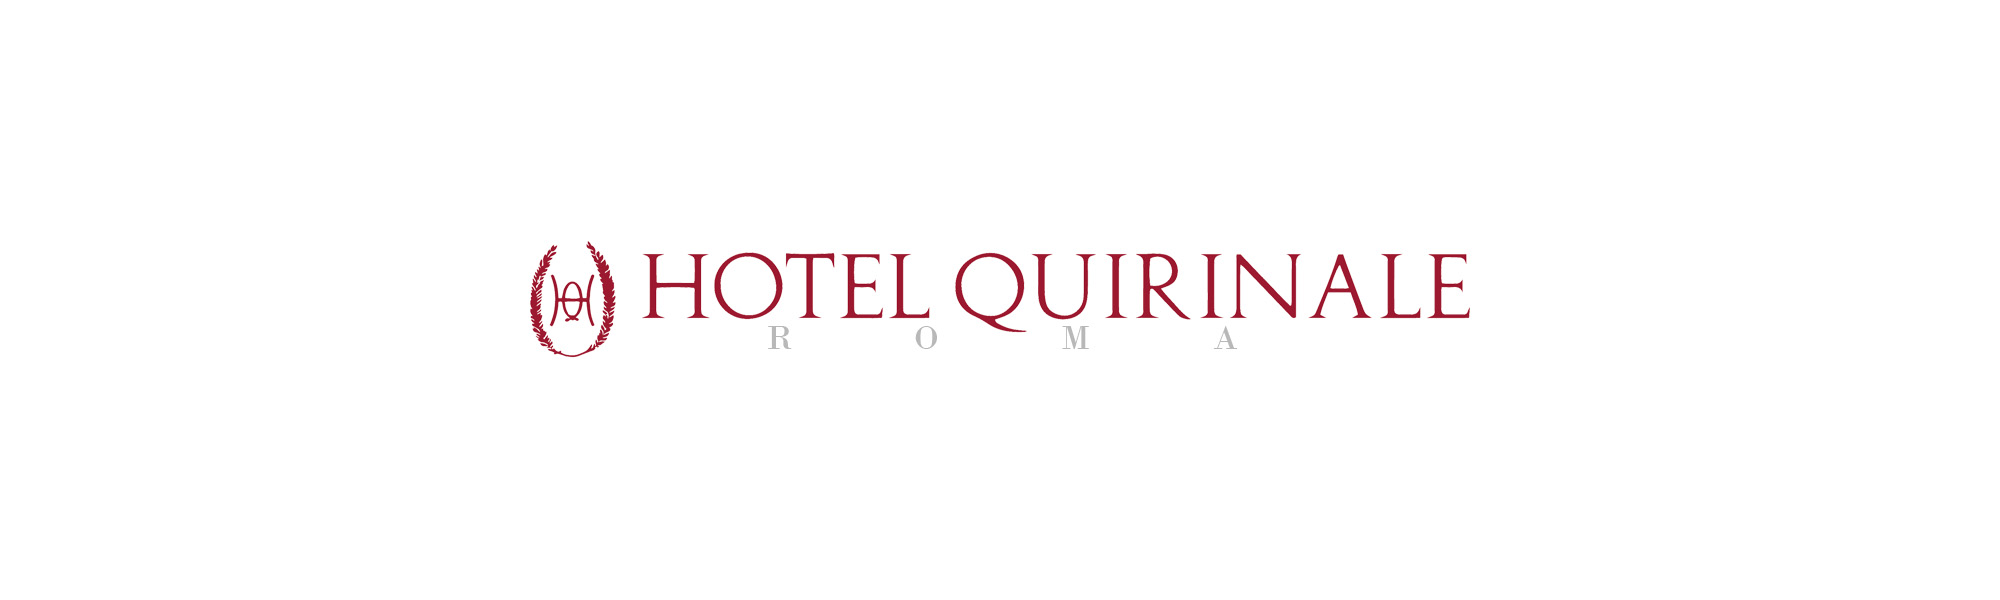 Hotel Quirinale Roma